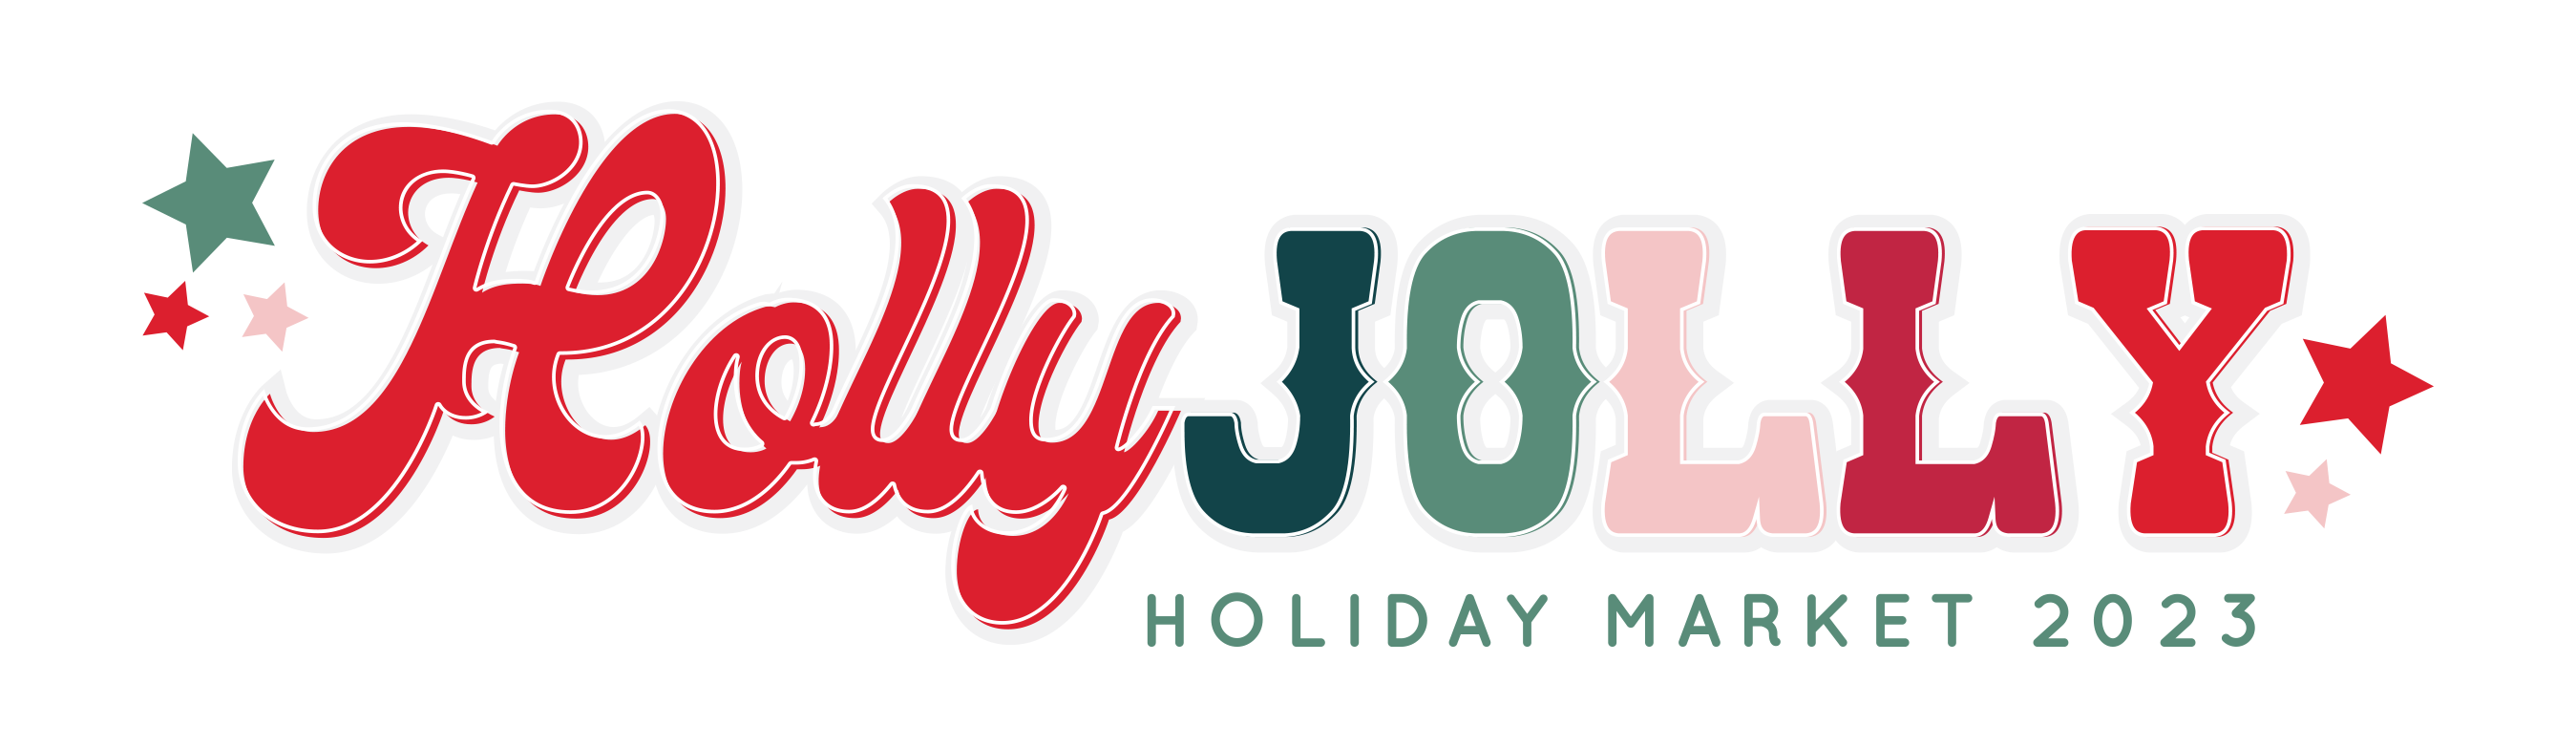 Holly Jolly Market